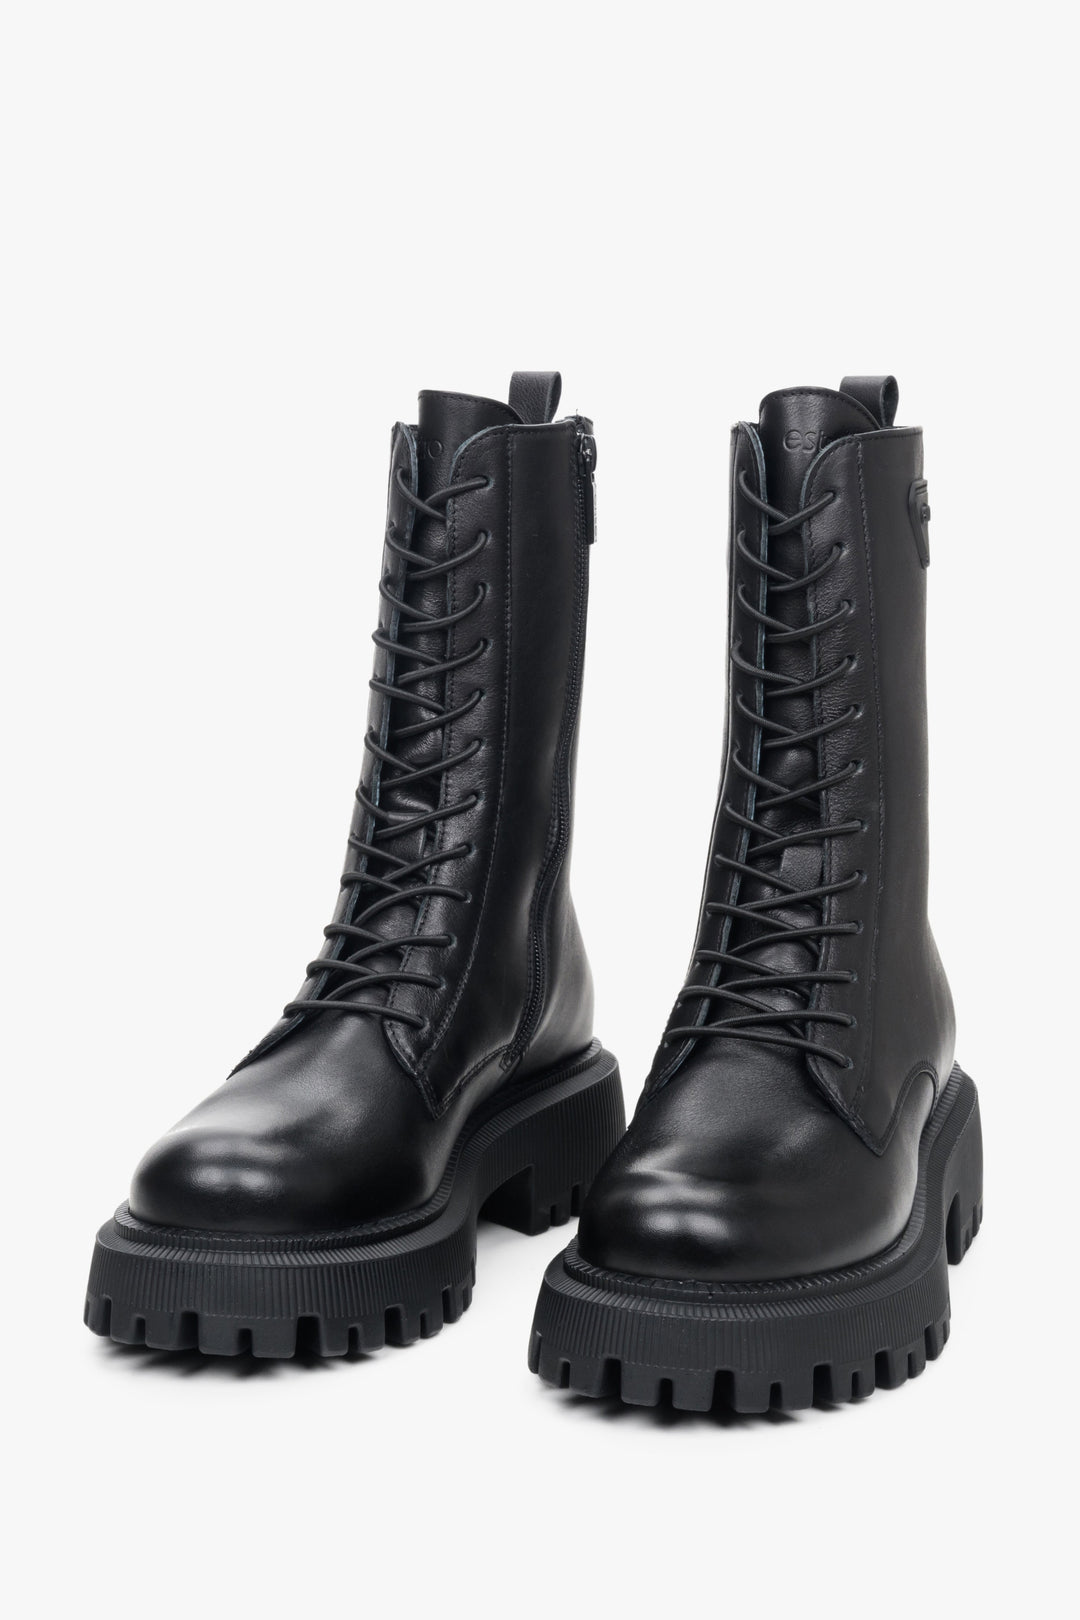 Wysokie, damskie buty skórzane w kolorze czarnym marki Estro.